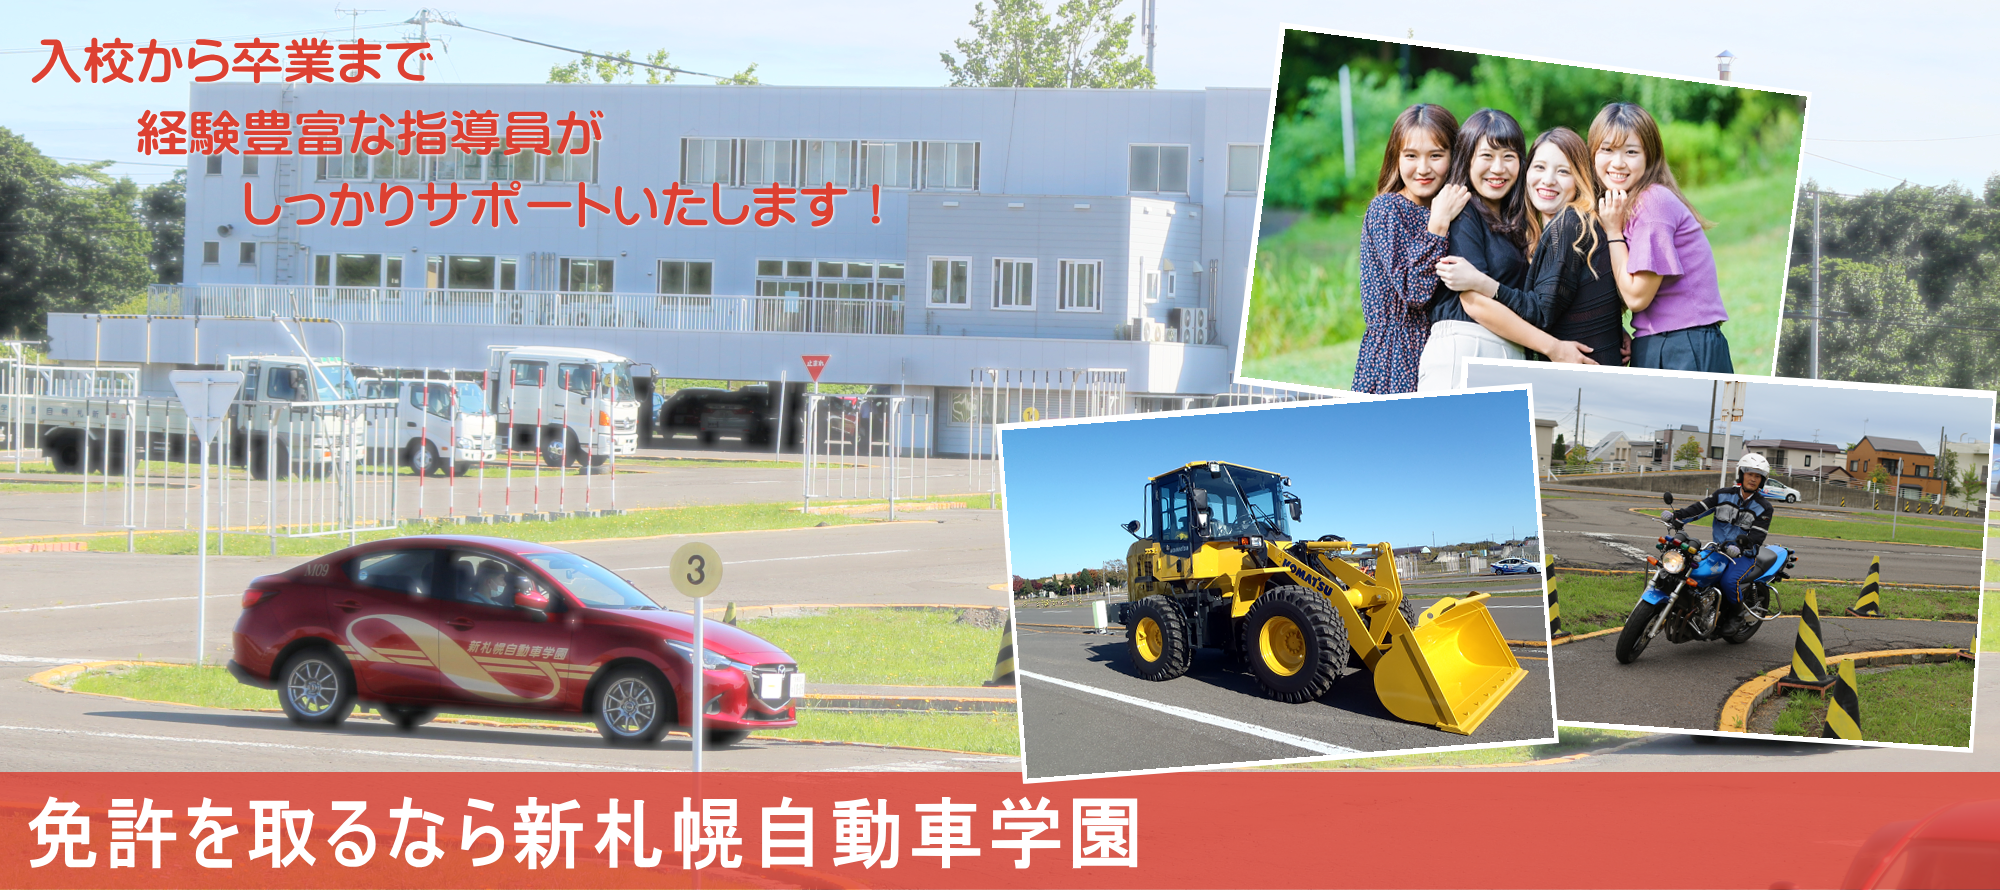 免許を取るなら新札幌自動車学園